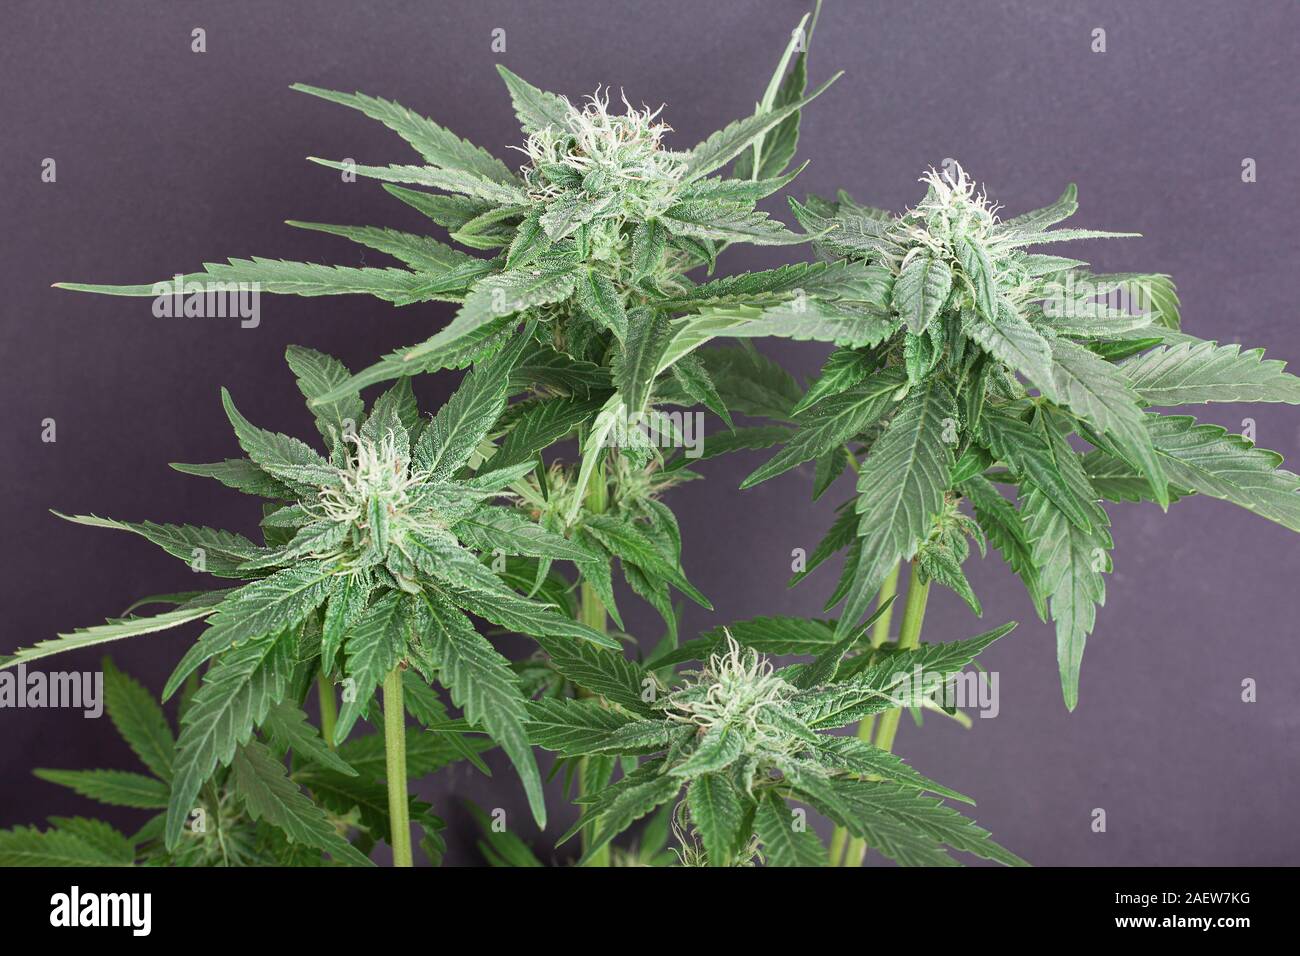 Boccioli di fiore di marijuana medica su sfondo grigio. ..La cannabis fiori ricoperti di tricomi bianco e i capelli... Foto Stock